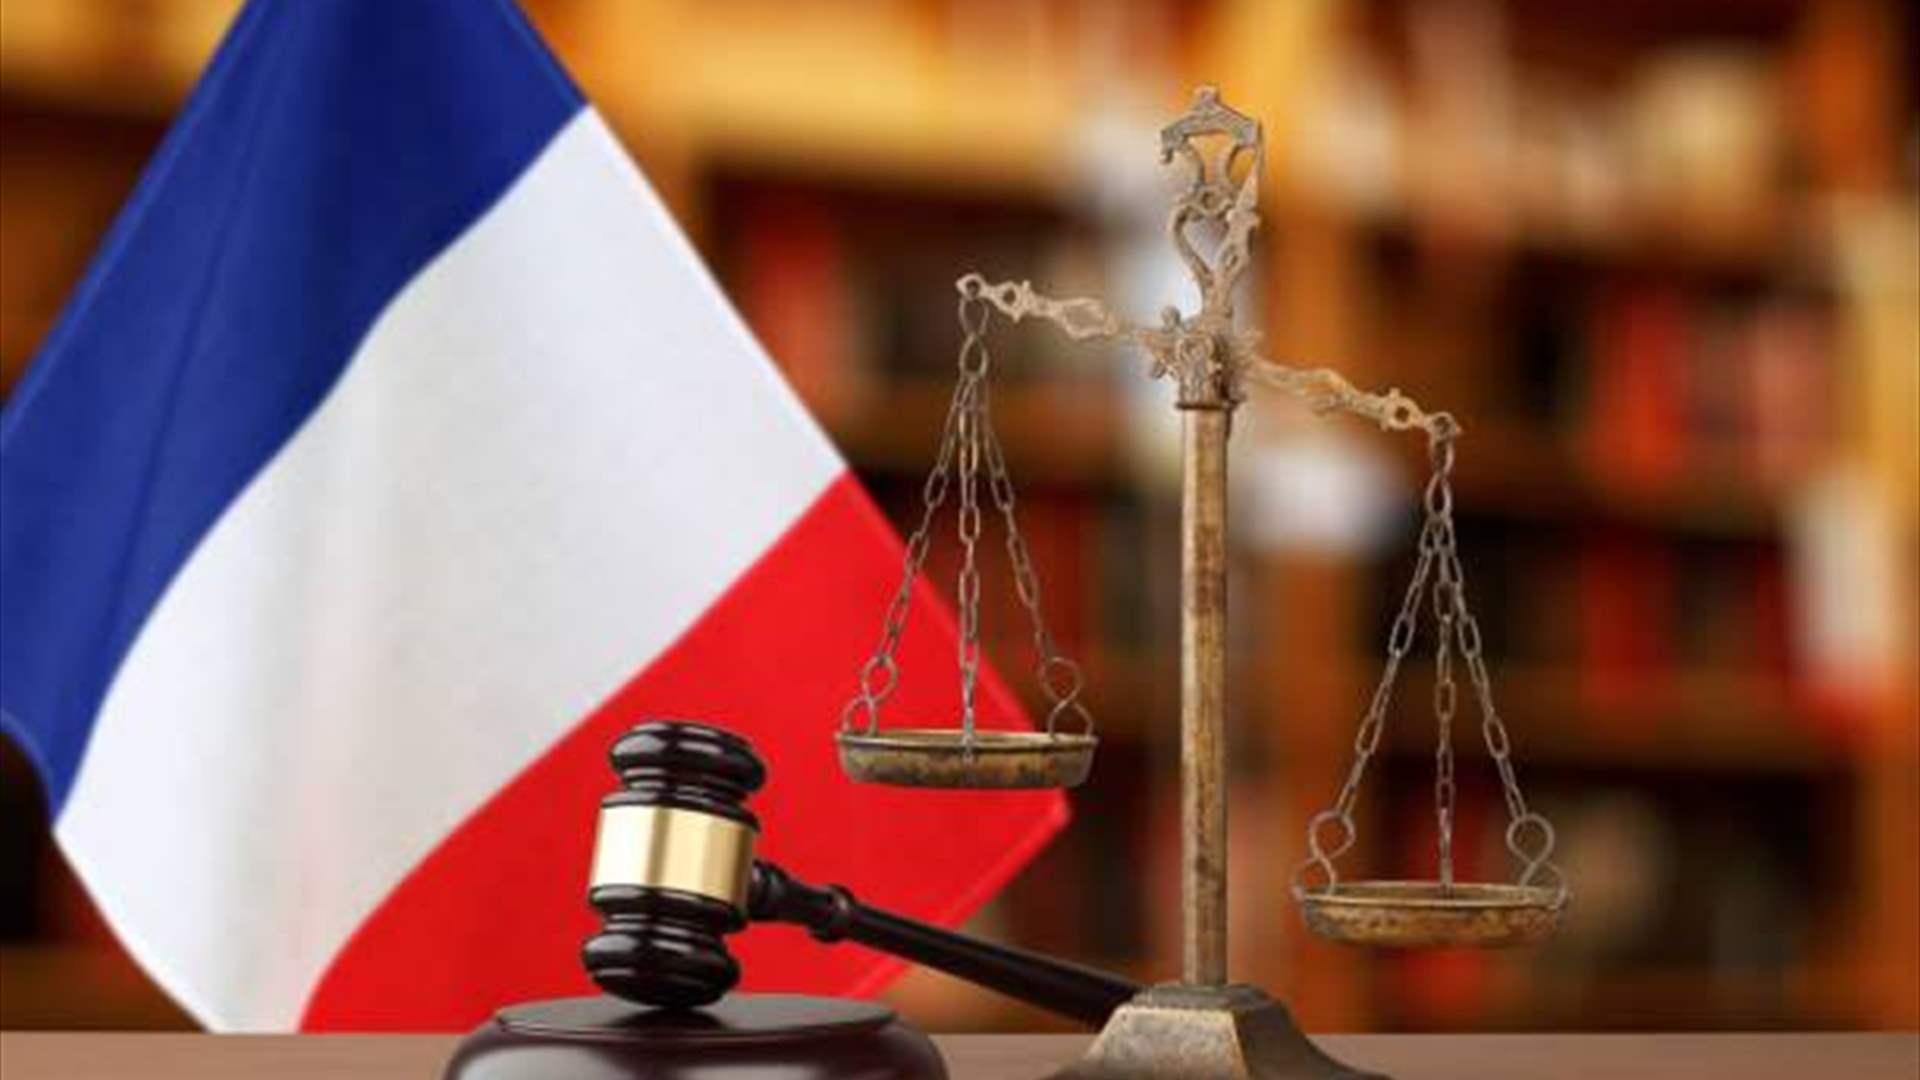 القضاء الفرنسي يوافق على إلقاء الحجز على الأموال والممتلكات العائدة لحاكم مصرف لبنان ورفاقه